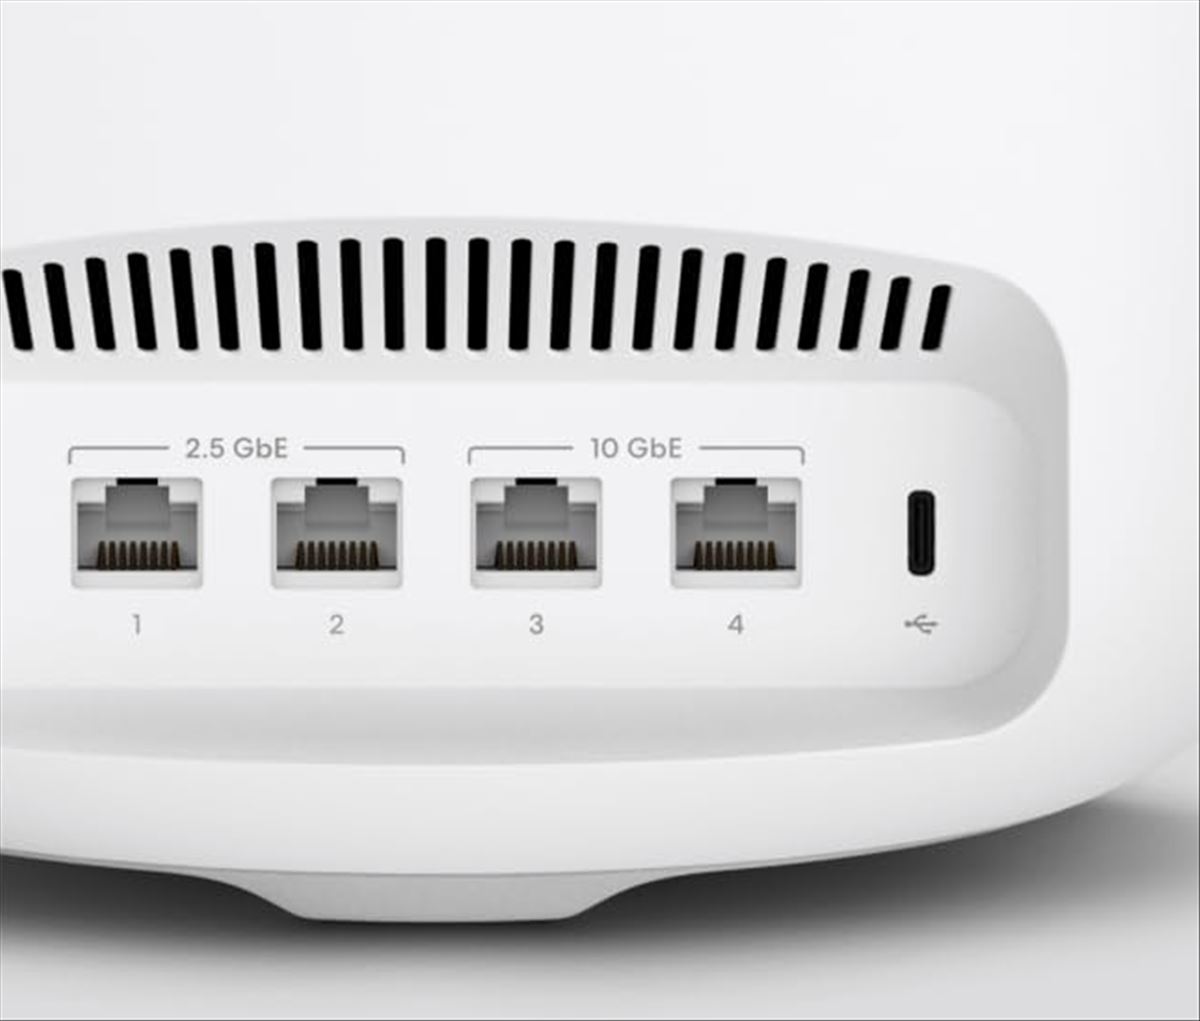 Amazon lanza eero Max 7: Un salto cualitativo en routers de malla